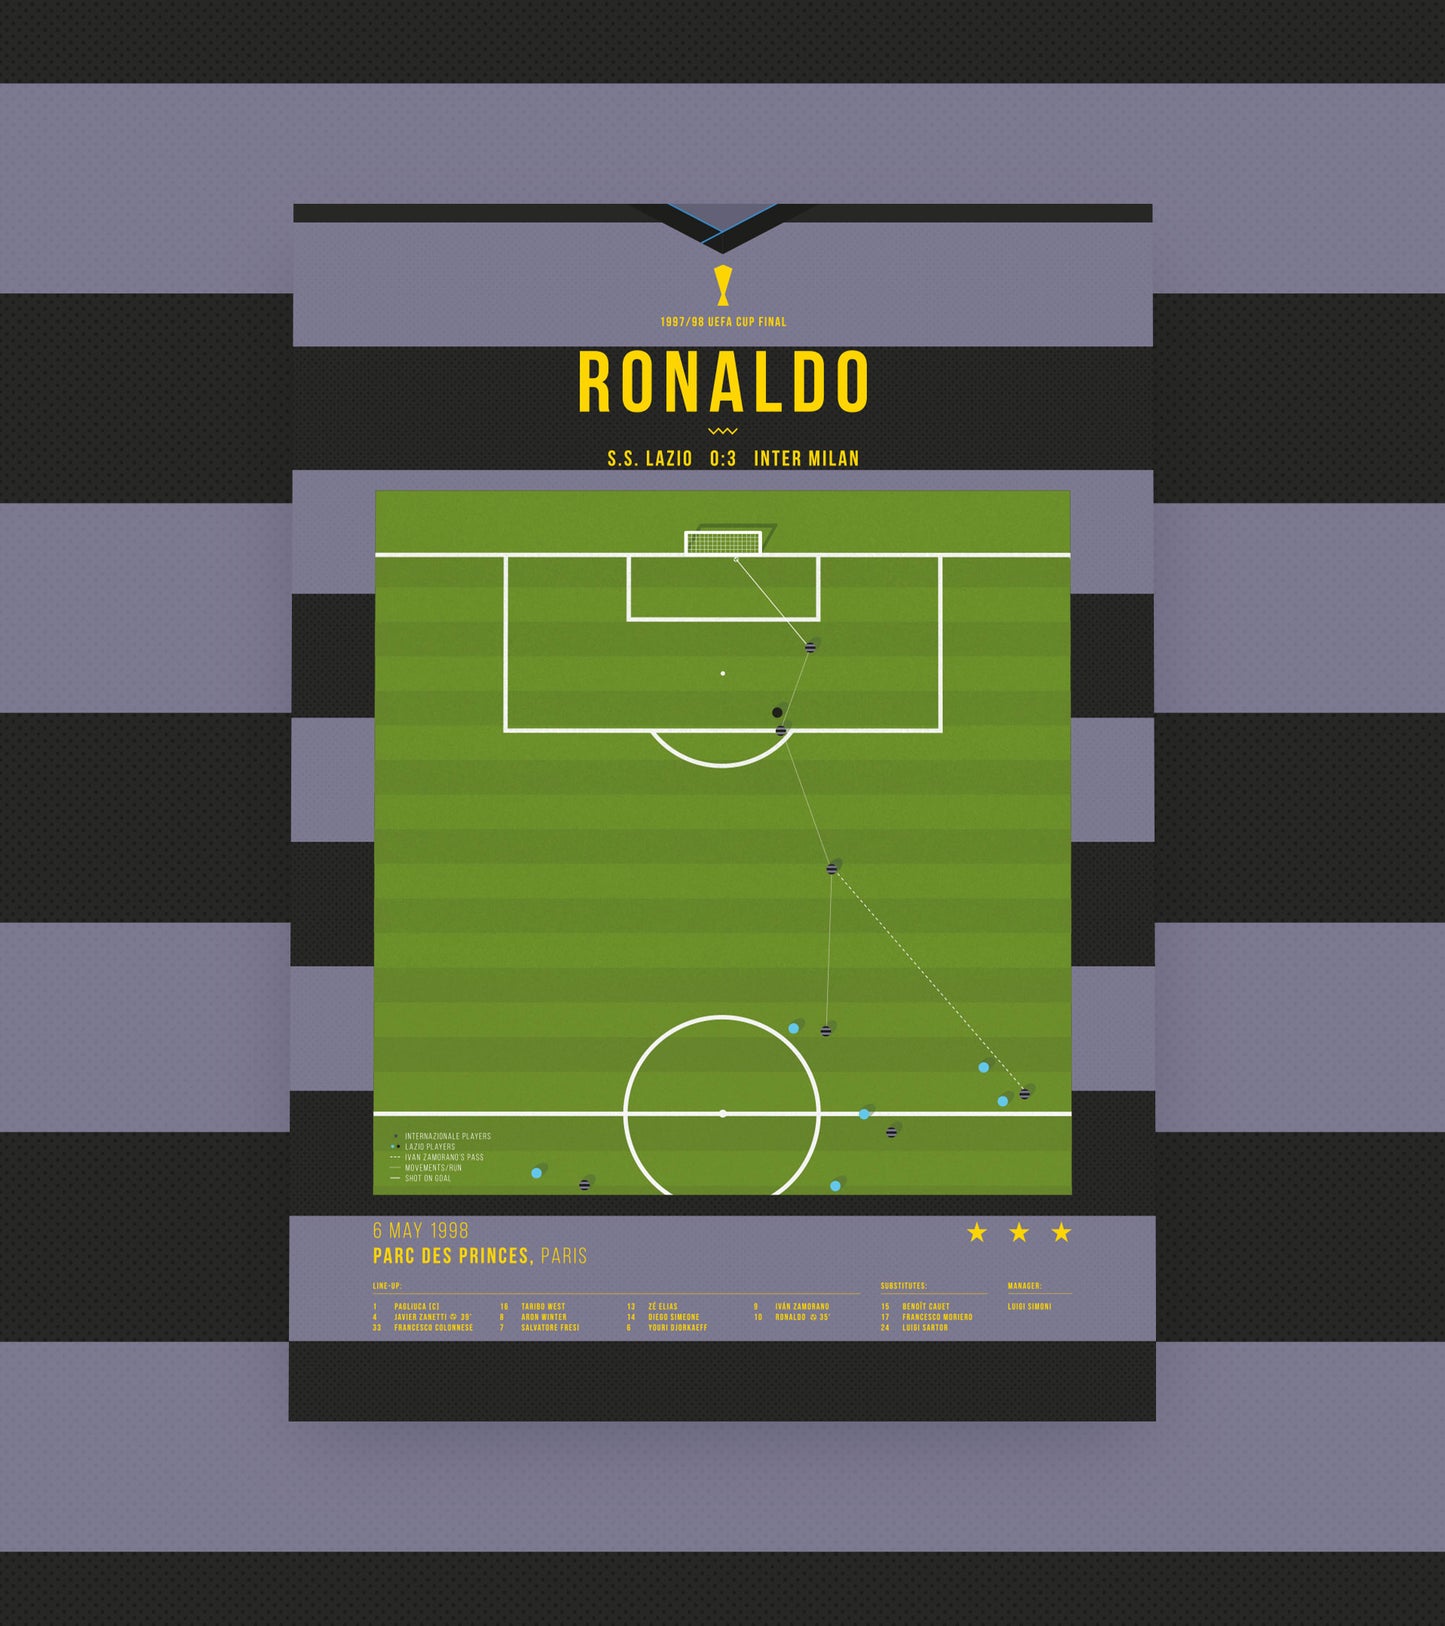 Ronaldo famous body feint goal vs Lazio